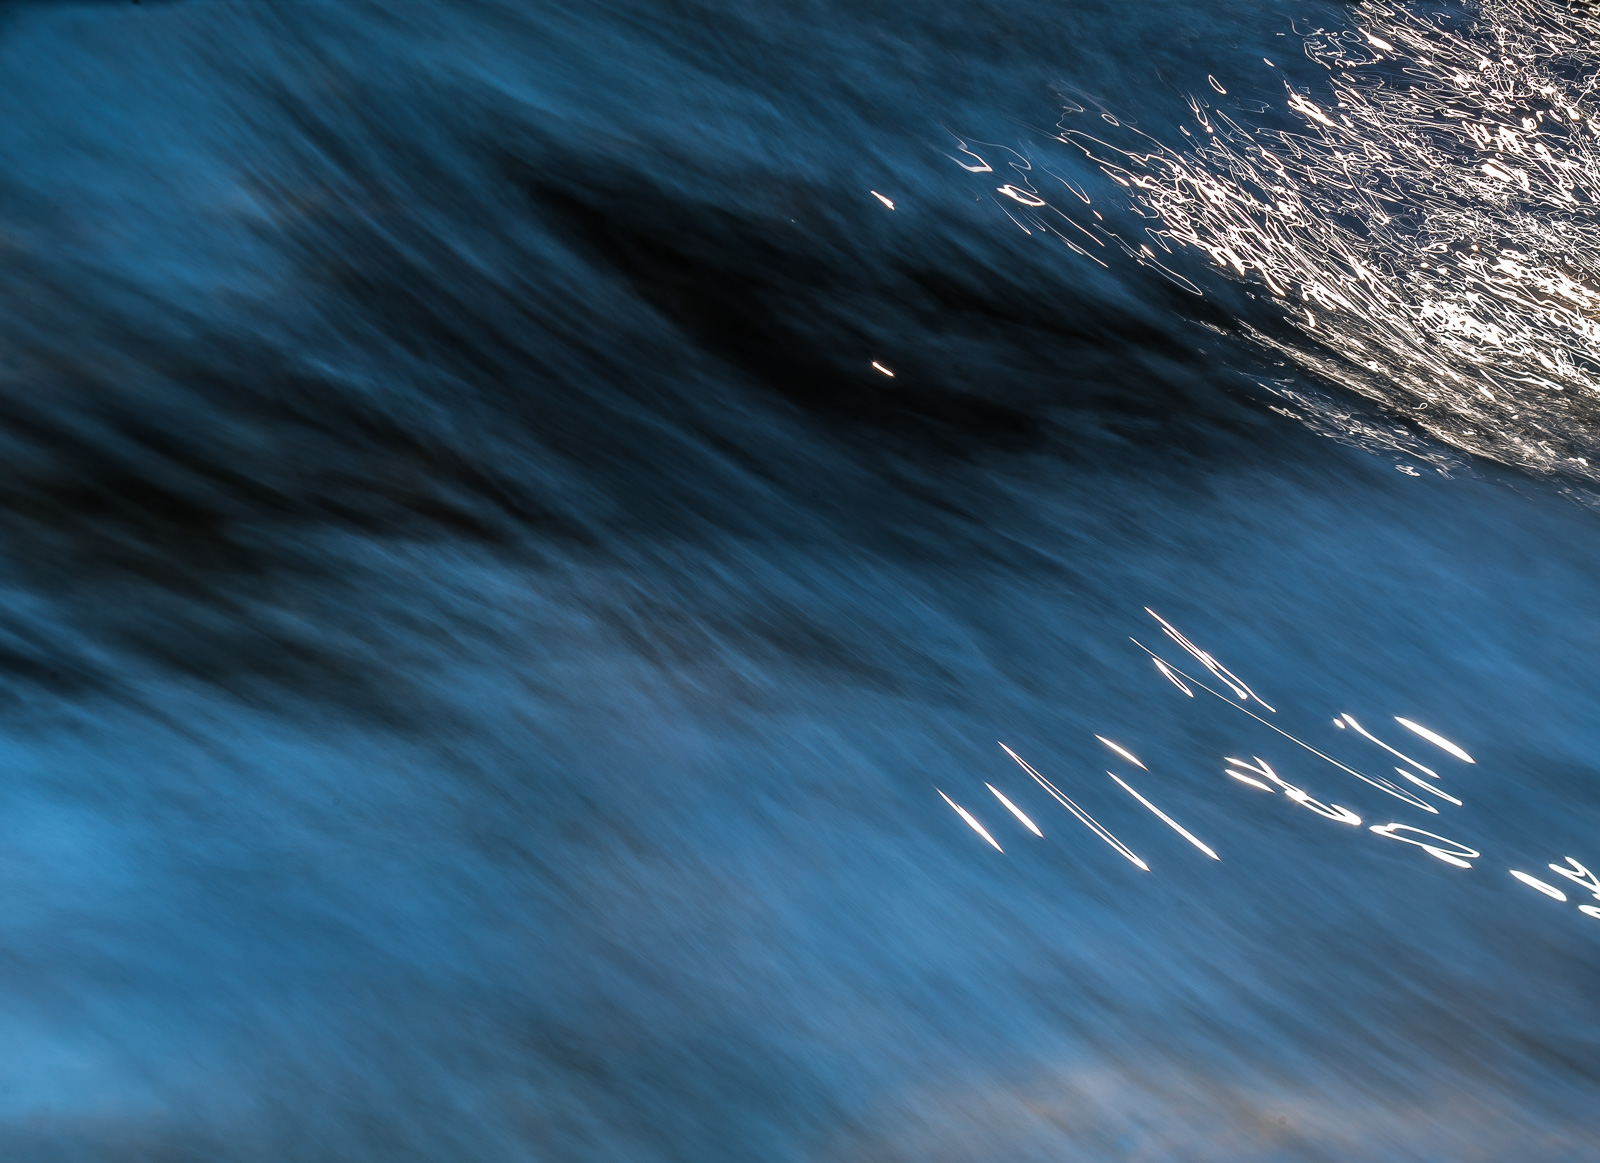 Eine diffuse blaue Wasseroberfläche, lange belichtet, die Bewegungsrichtung des Wassers von links oben nach rechts unten. Rechts oben und mittig mehrere krakelig aussehende Lichtreflexe, wie mit dem Pinsel und Deckweiß gezeichnet.